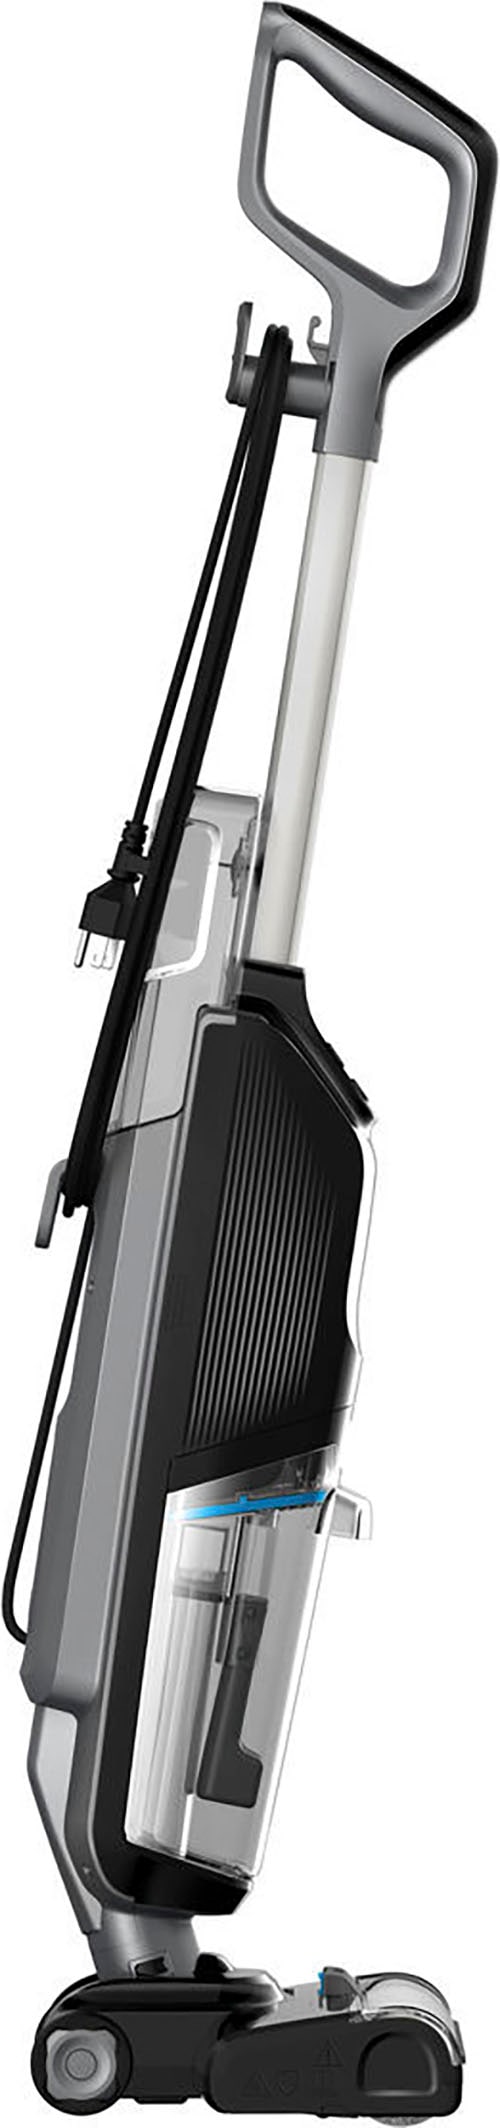 Bissell Nass-Trocken-Sauger »3847N, CrossWave® HF2 Select, leicht, einfach steuerbar«, für Hartböden, Dual-Tank, saugt & wischt gleichzeitig, Selbstreinigung